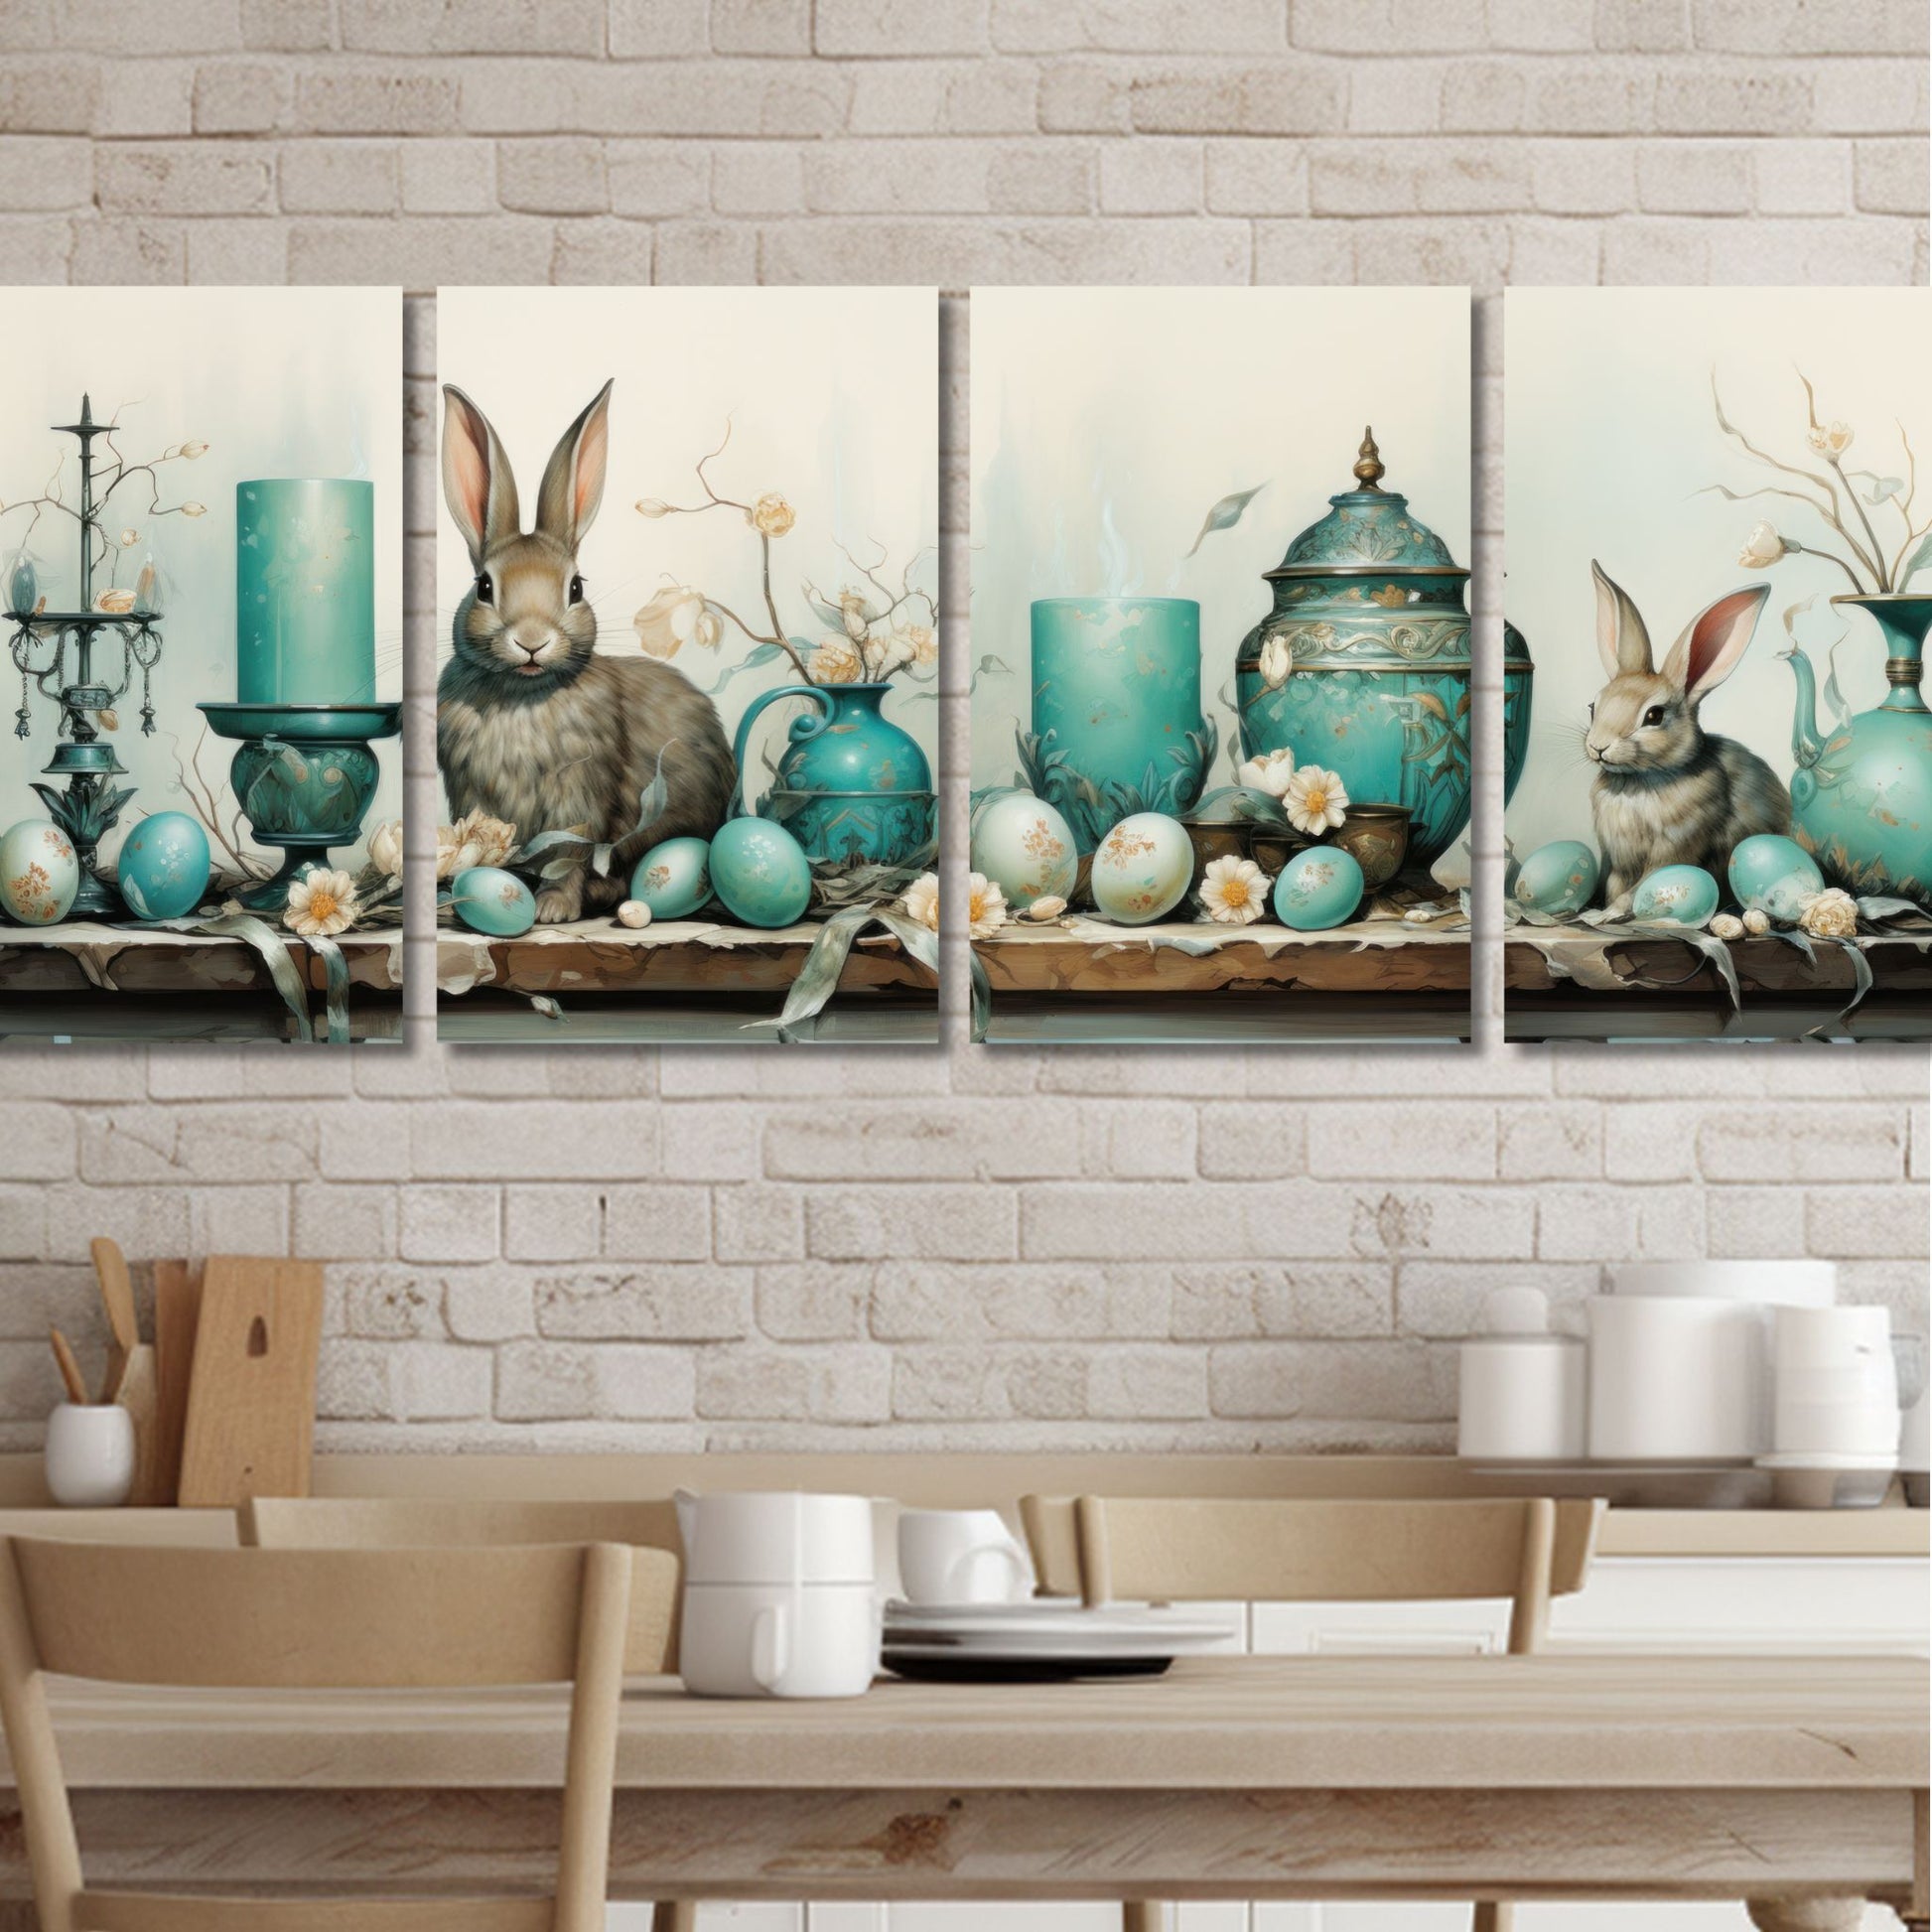 Grafisk illustrasjon med fire paneler danner et vakkert langbord dekorert med påskepynt, inkludert lys, krukker, vaser med blomster og påskeegg, alt i duse turkise, beige og brune farger. To sjarmerende brune kaniner legger til en ekstra touch av sjarm til motivet. Illustrasjonesfoto viser motivene på en vegg ved et spisebord.